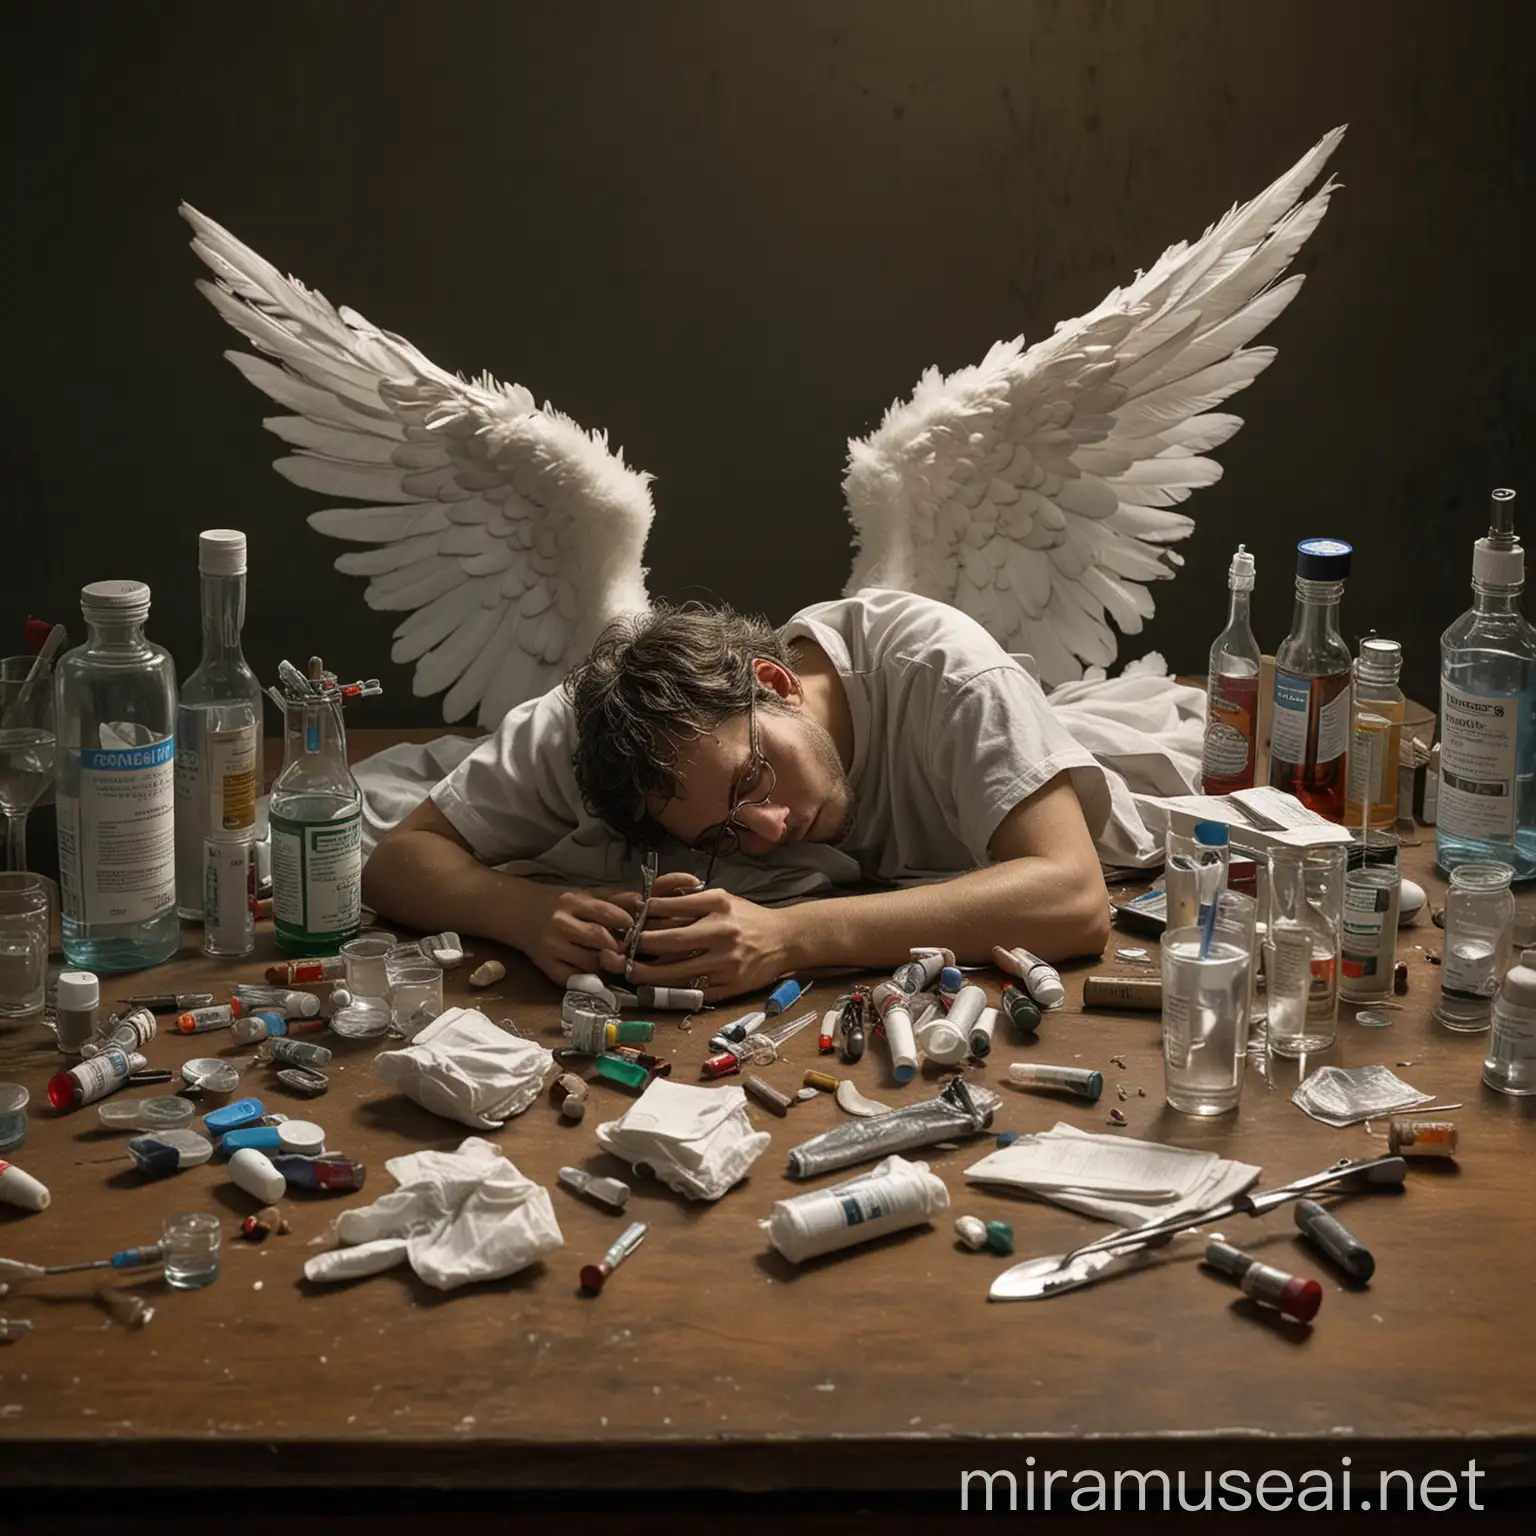 un ange gardien, avec ses ailes, il est mort de fatibue et dort sur une table, des tubes de médicaments autour de lui, des verres d'alcool, des bouteilles, des seringues, une cuiller en inox, photograhpie, réaliste